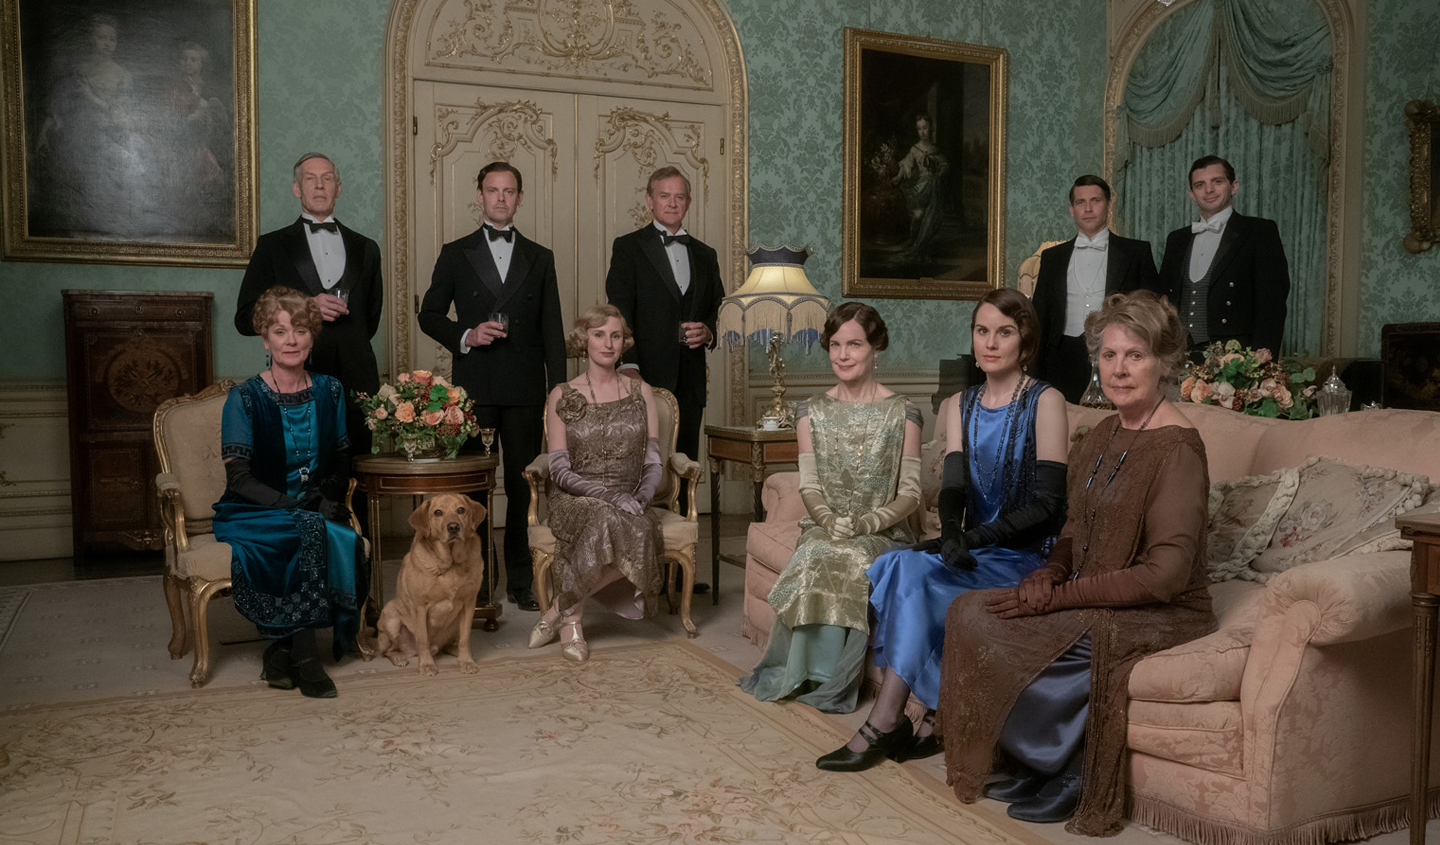 Downton Abbey 2 : Une Nouvelle ère